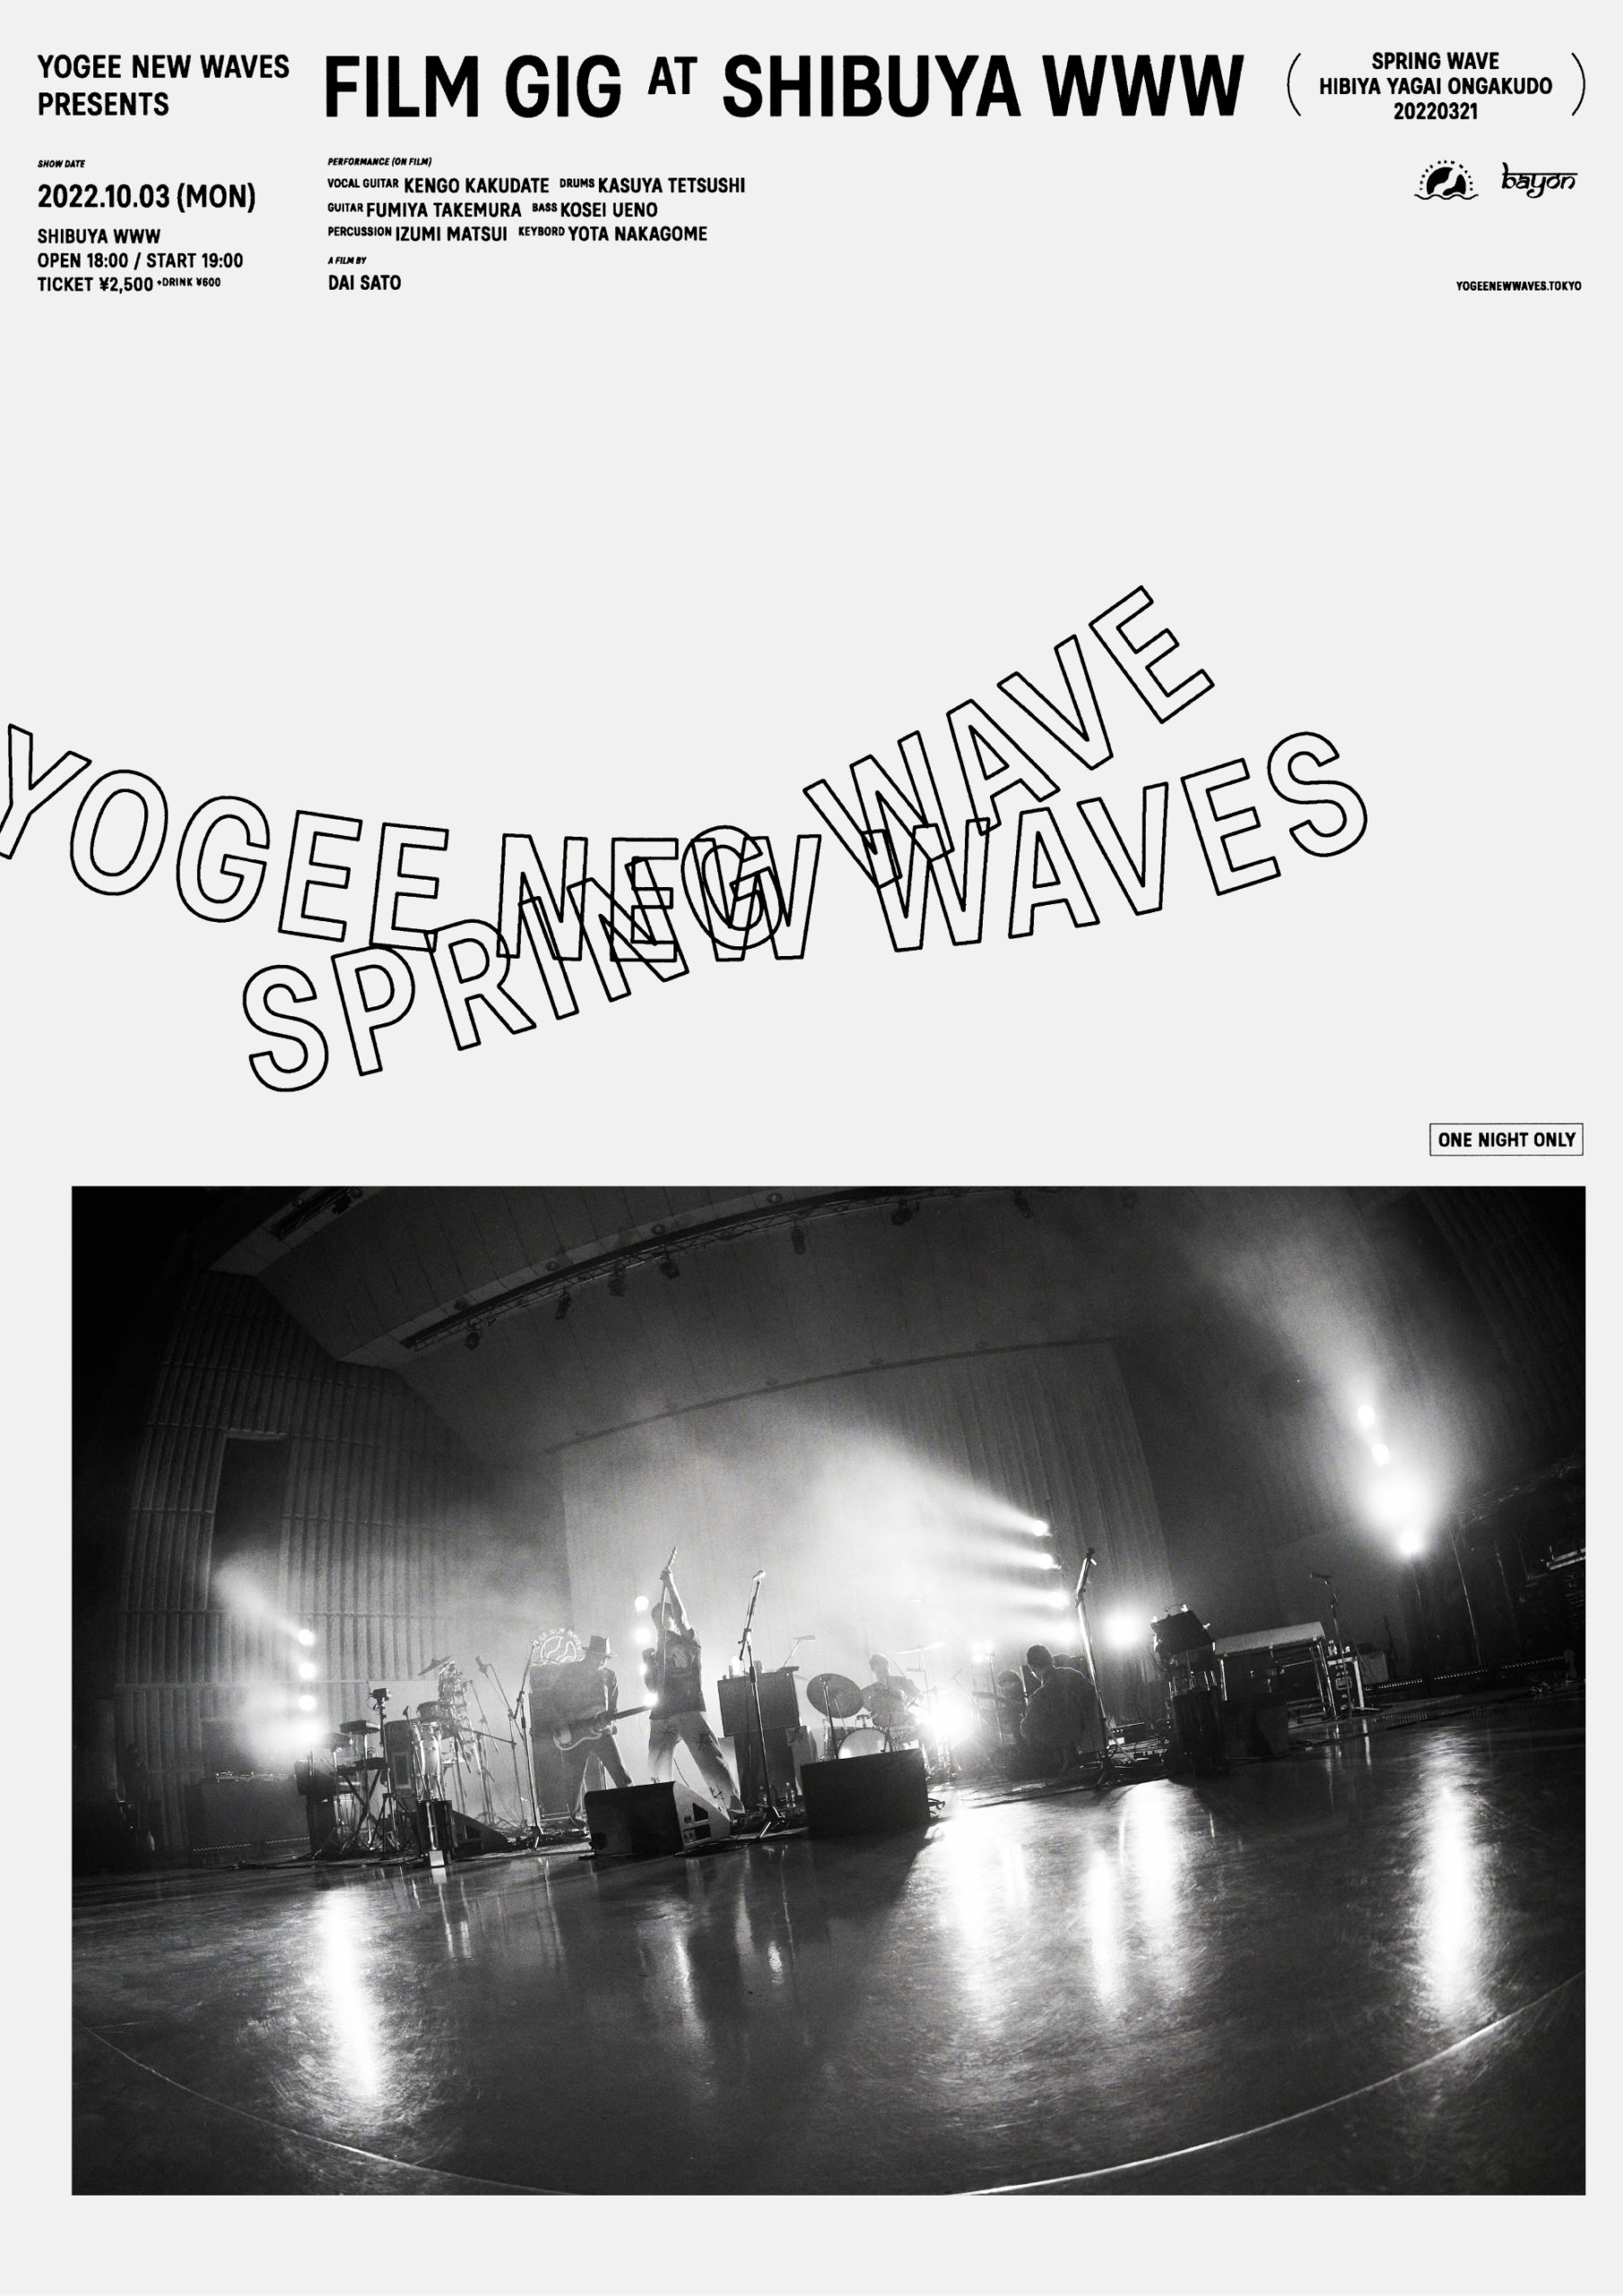 Yogee New Waves presents『FILM GIG at SHIBUYA WWW』 上映 